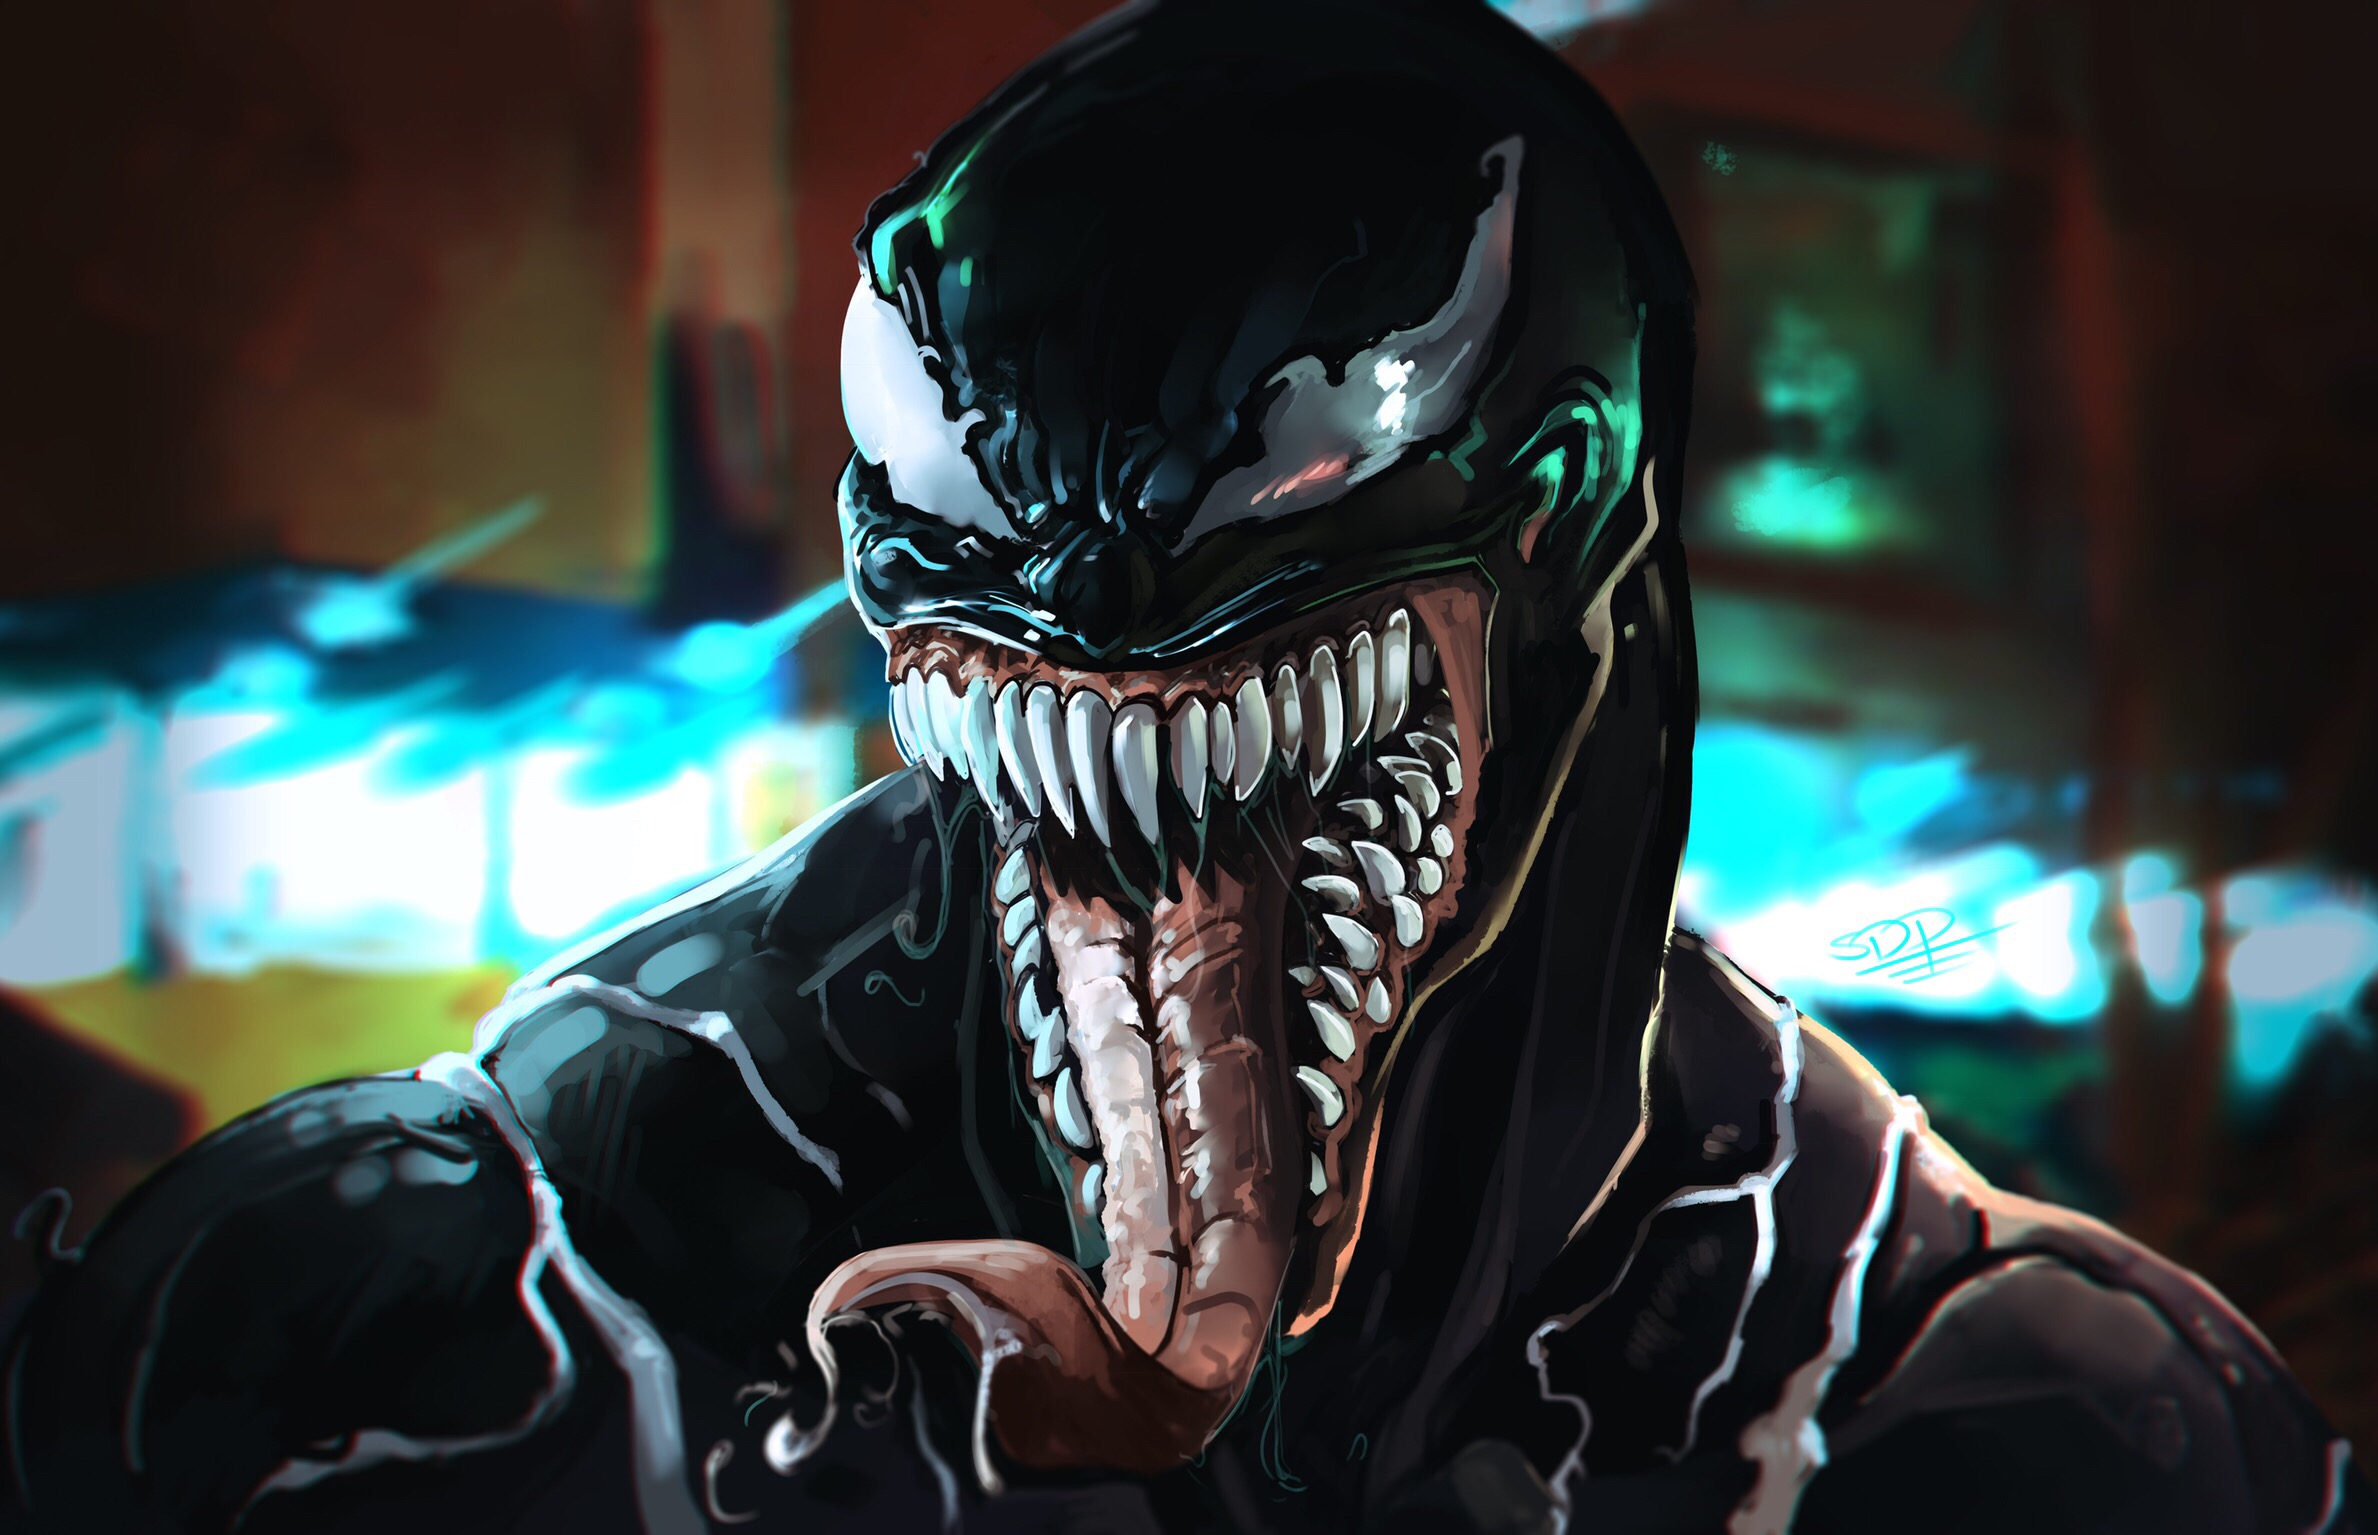  Venom Cellphone FHD pic